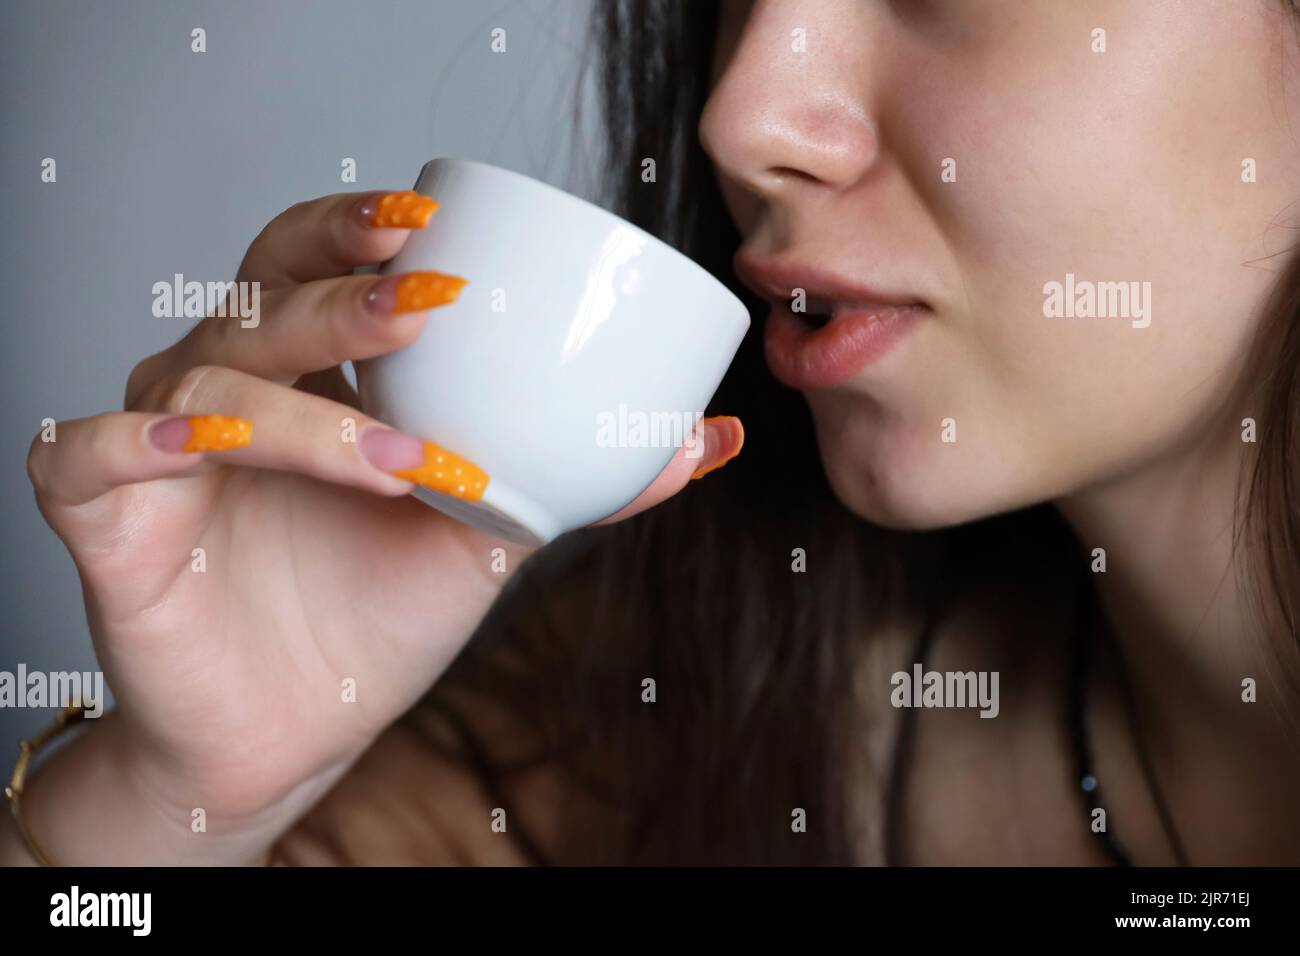 Chica sensual bebiendo té o café, taza blanca en la mano con uñas acrílicas anaranjadas cerca de los labios femeninos. Concepto de disfrutar de una bebida caliente Foto de stock